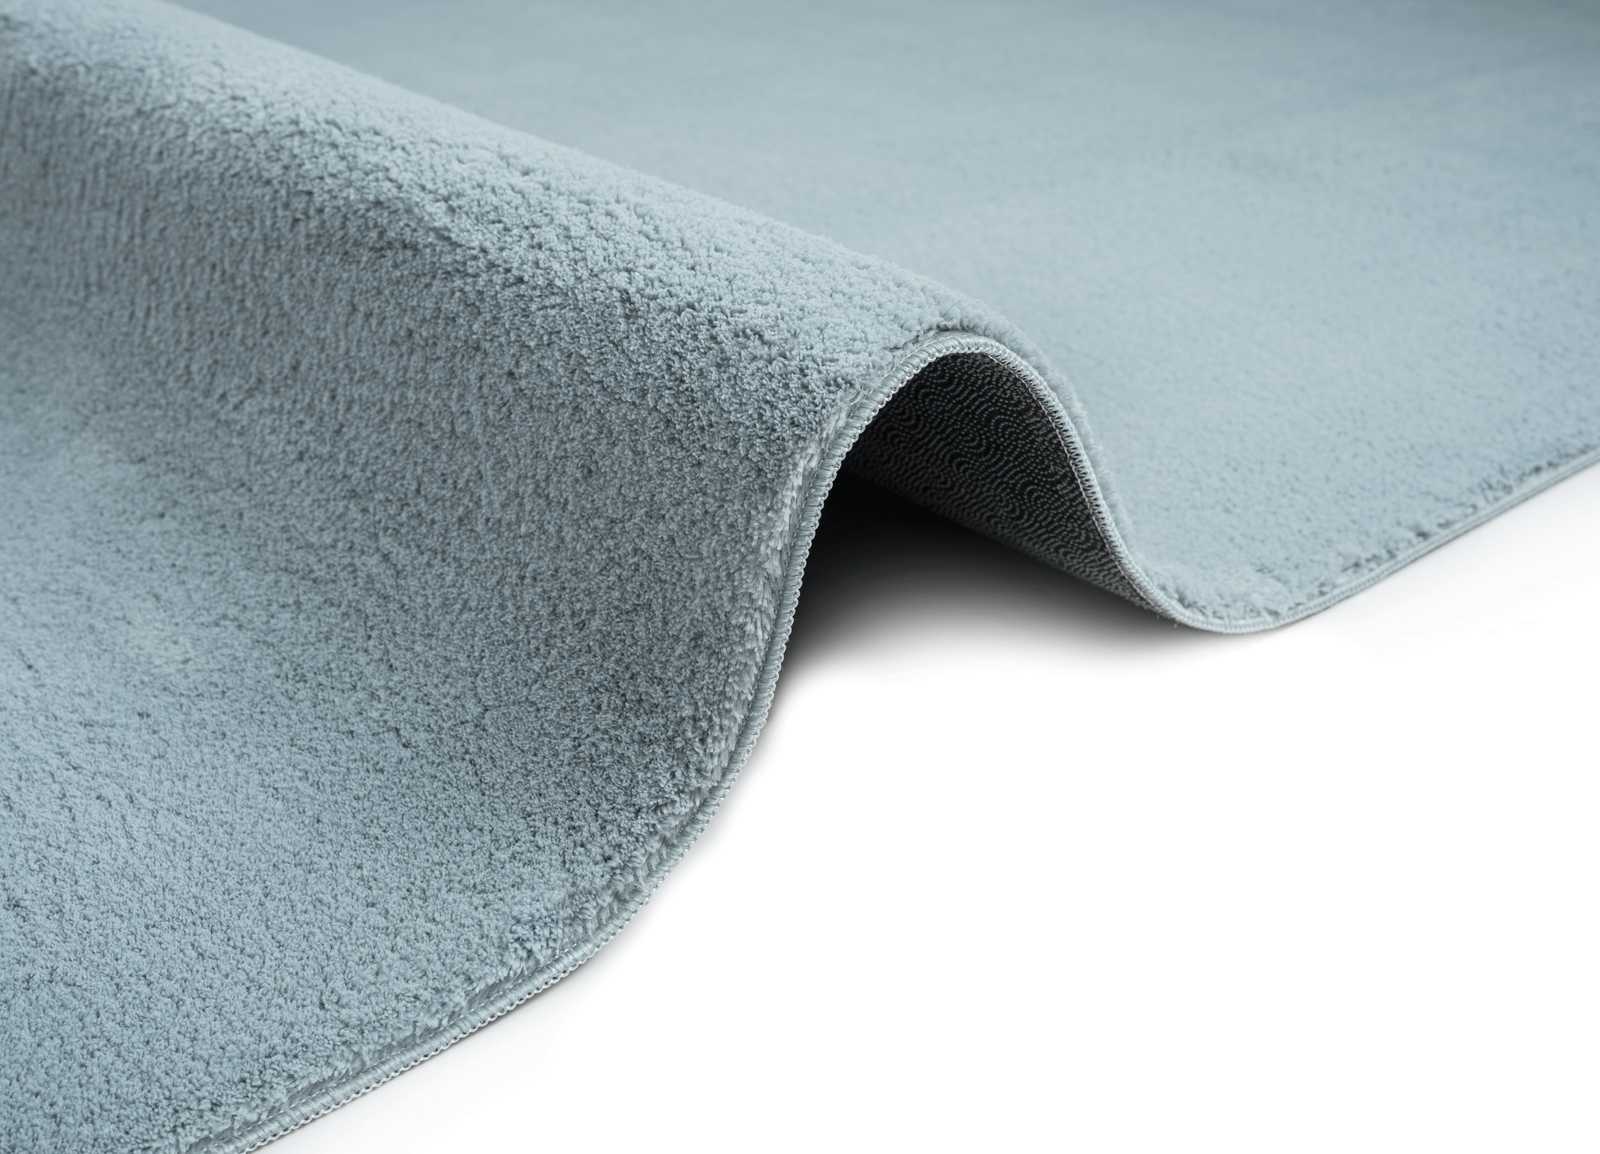             Flauschiger Hochflor Teppich in Blau – 230 x 160 cm
        